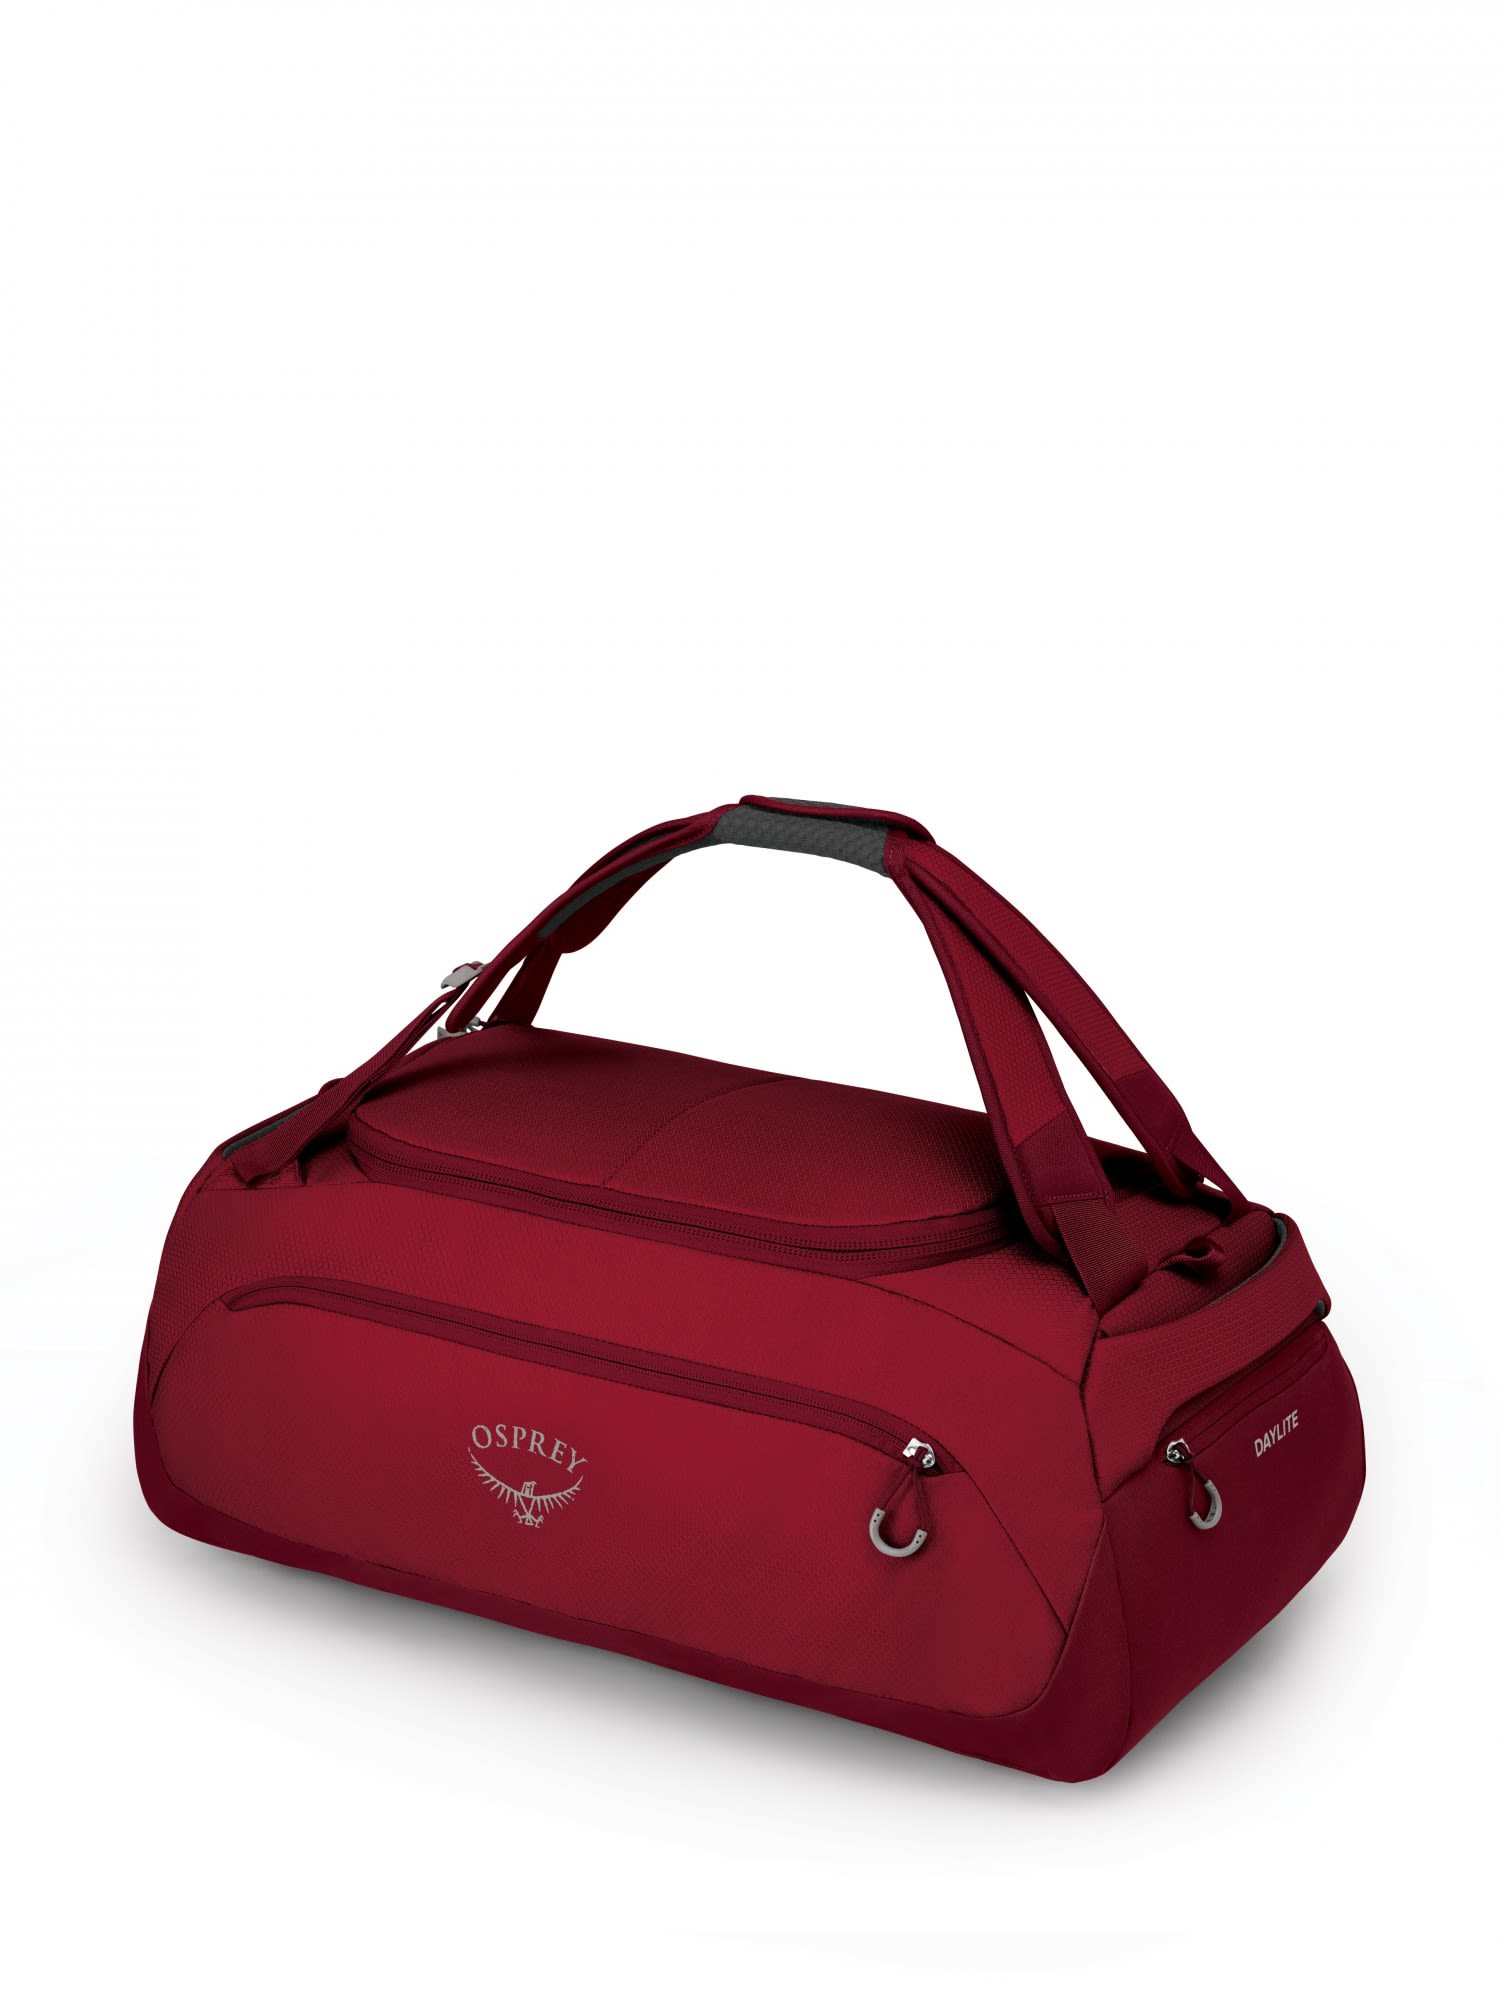 Osprey Daylite Duffel 45 Rot- Sporttaschen- Grsse 45l - Farbe Cosmic Red